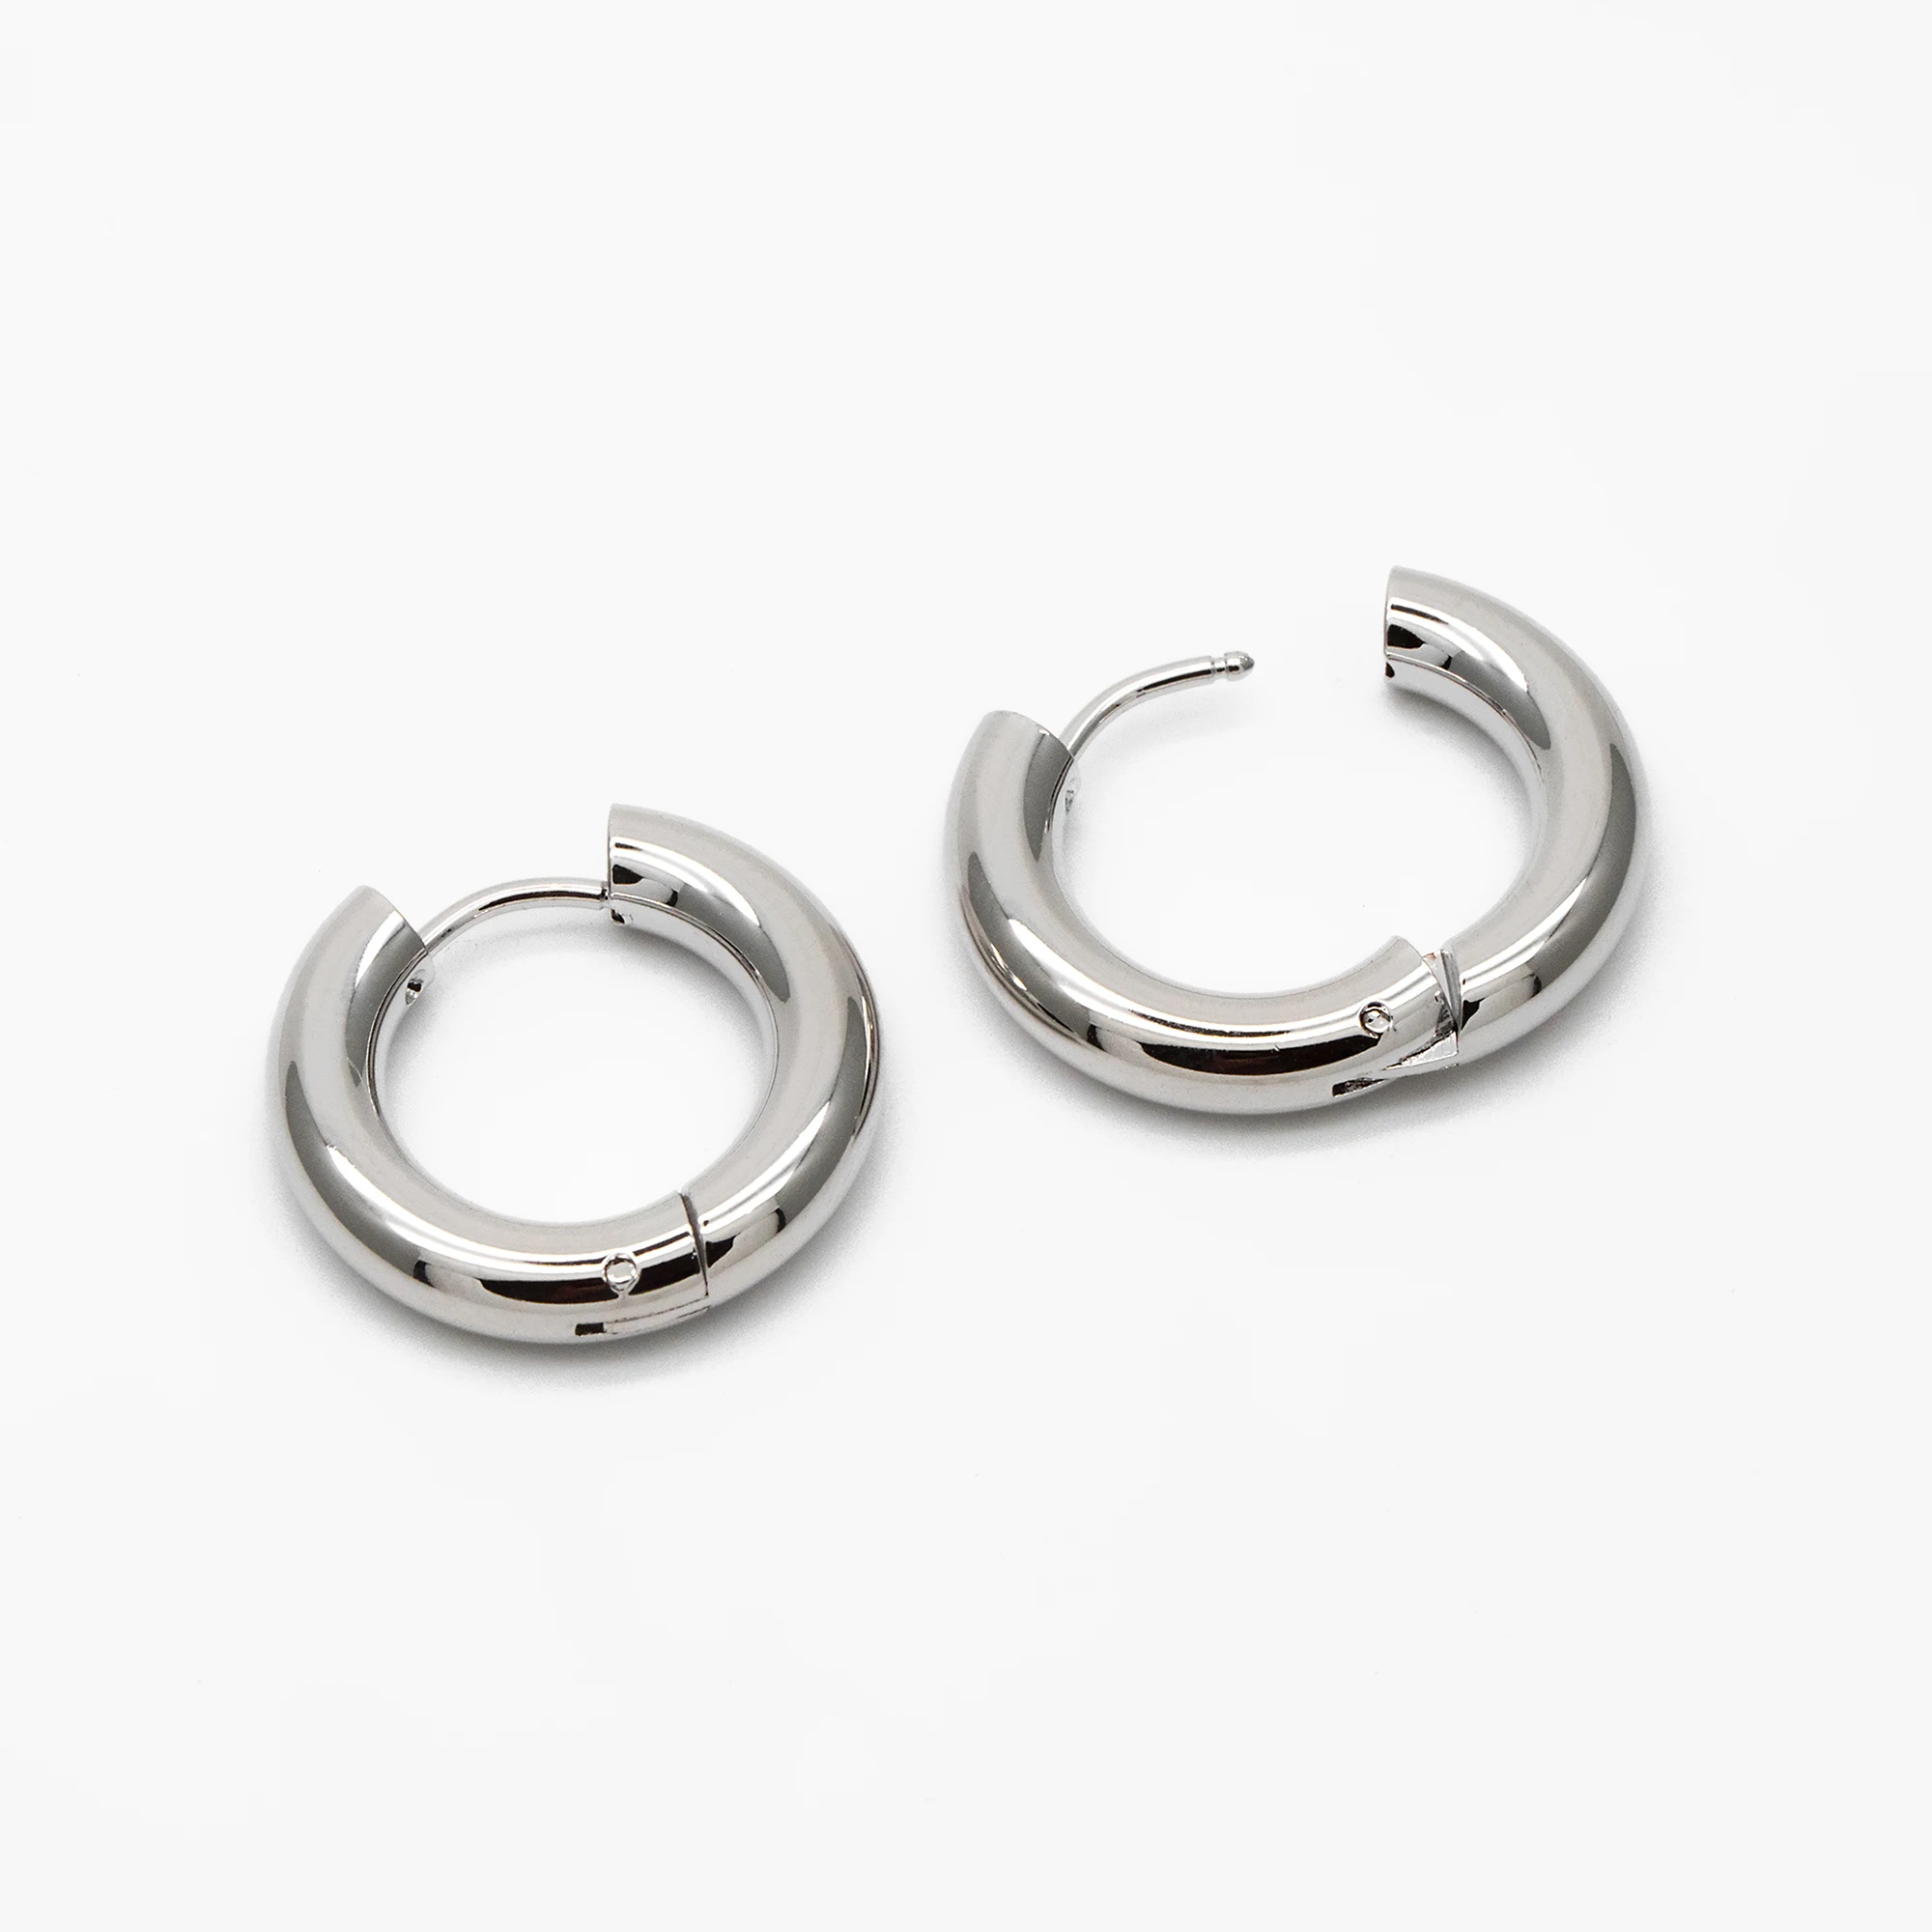 

4pcs Silver Tone Chunky Hoop Huggies, 4mm Thick, 20mm, Stainless Steel Hoop Earrings, Minimalist Earrings (GB-3876)